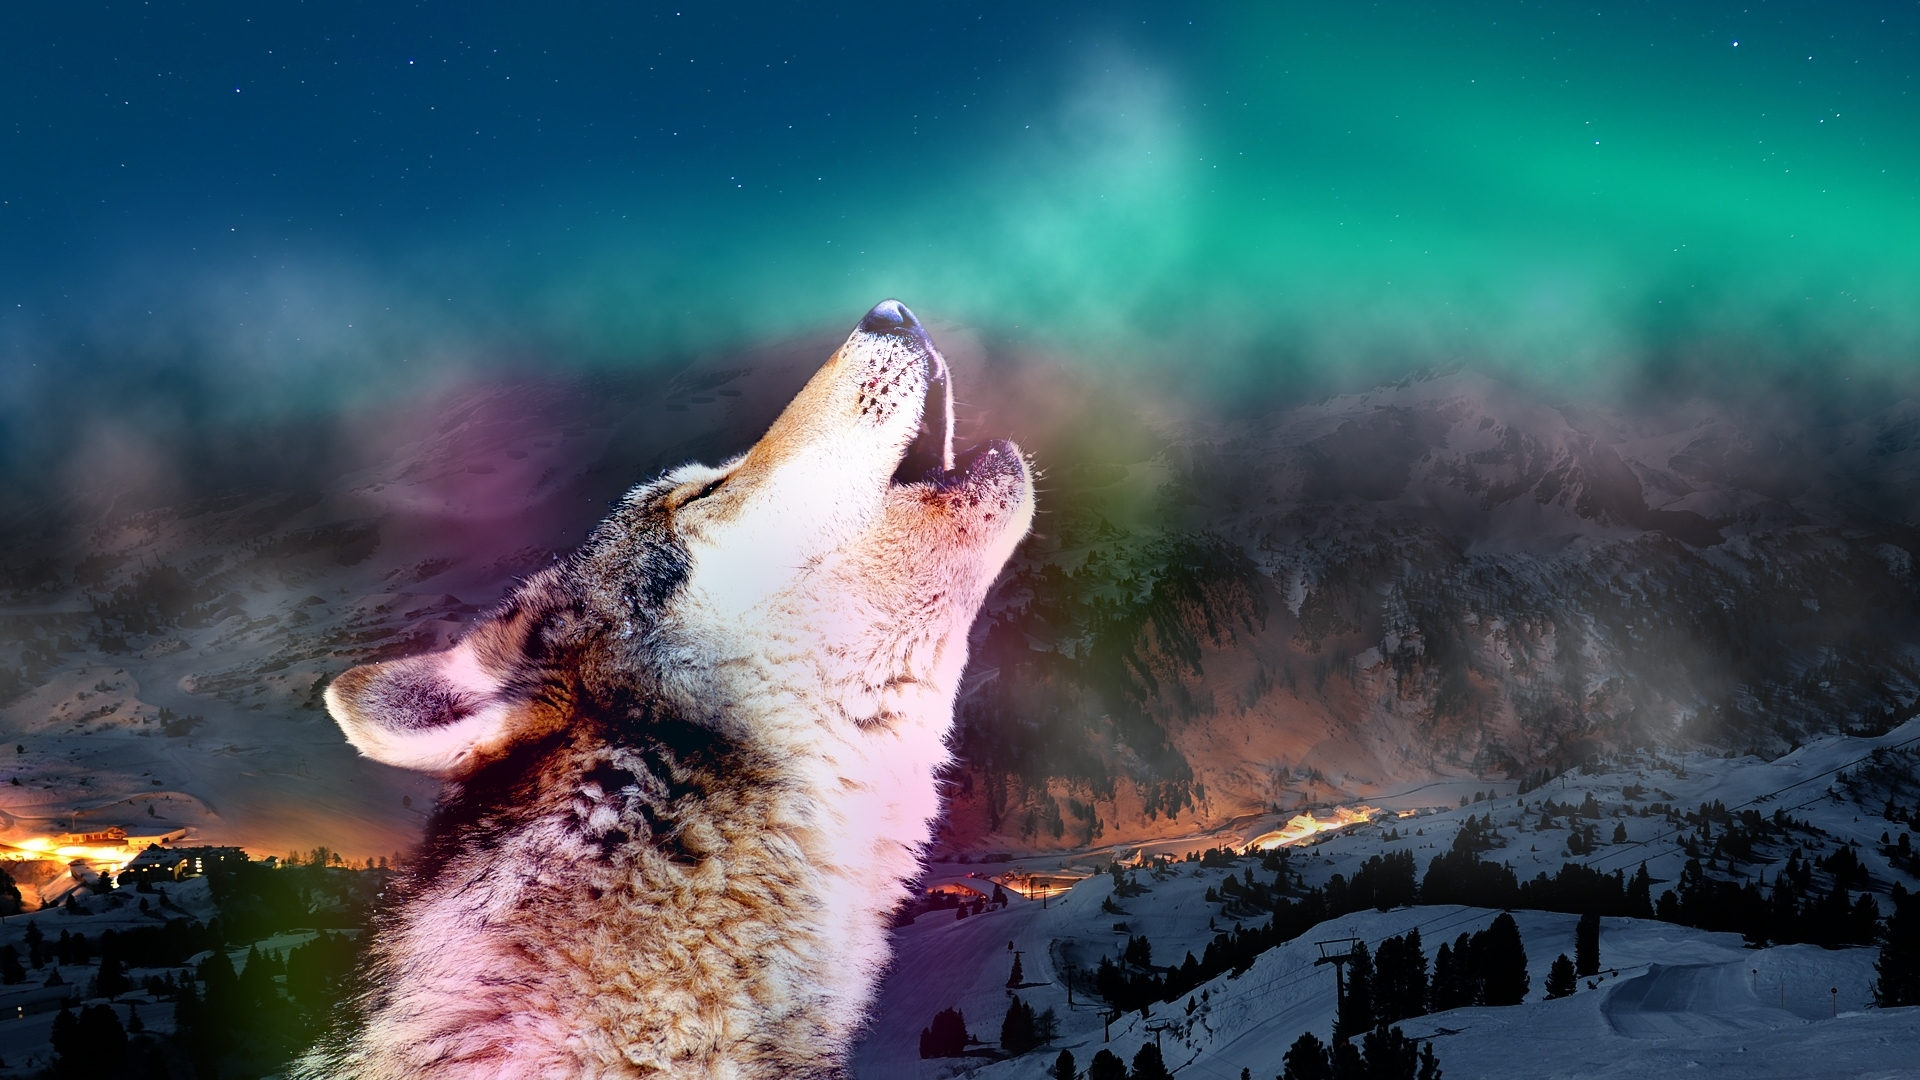 Descarga gratis la imagen Animales, Lobos en el escritorio de tu PC